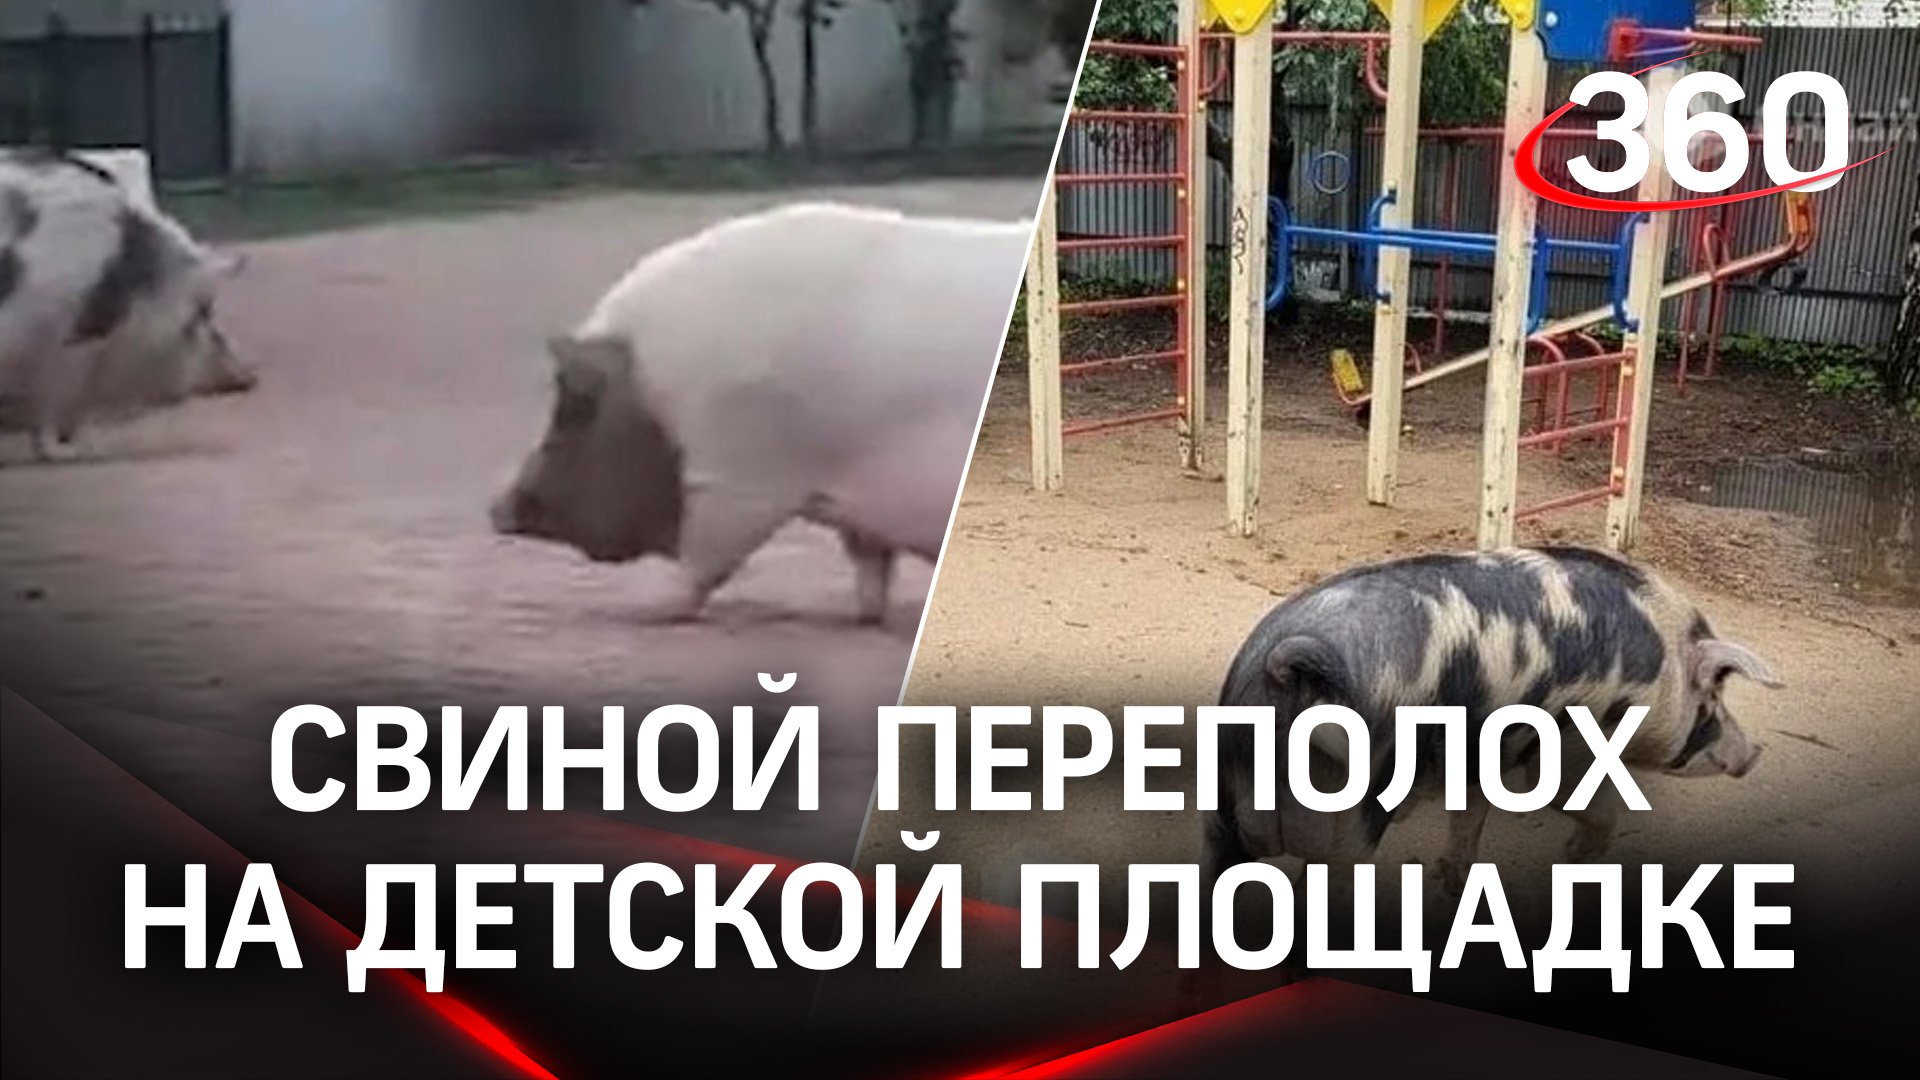 Две любопытные свиньи устроили переполох в Петербурге - дети в восторге, взрослые в шоке